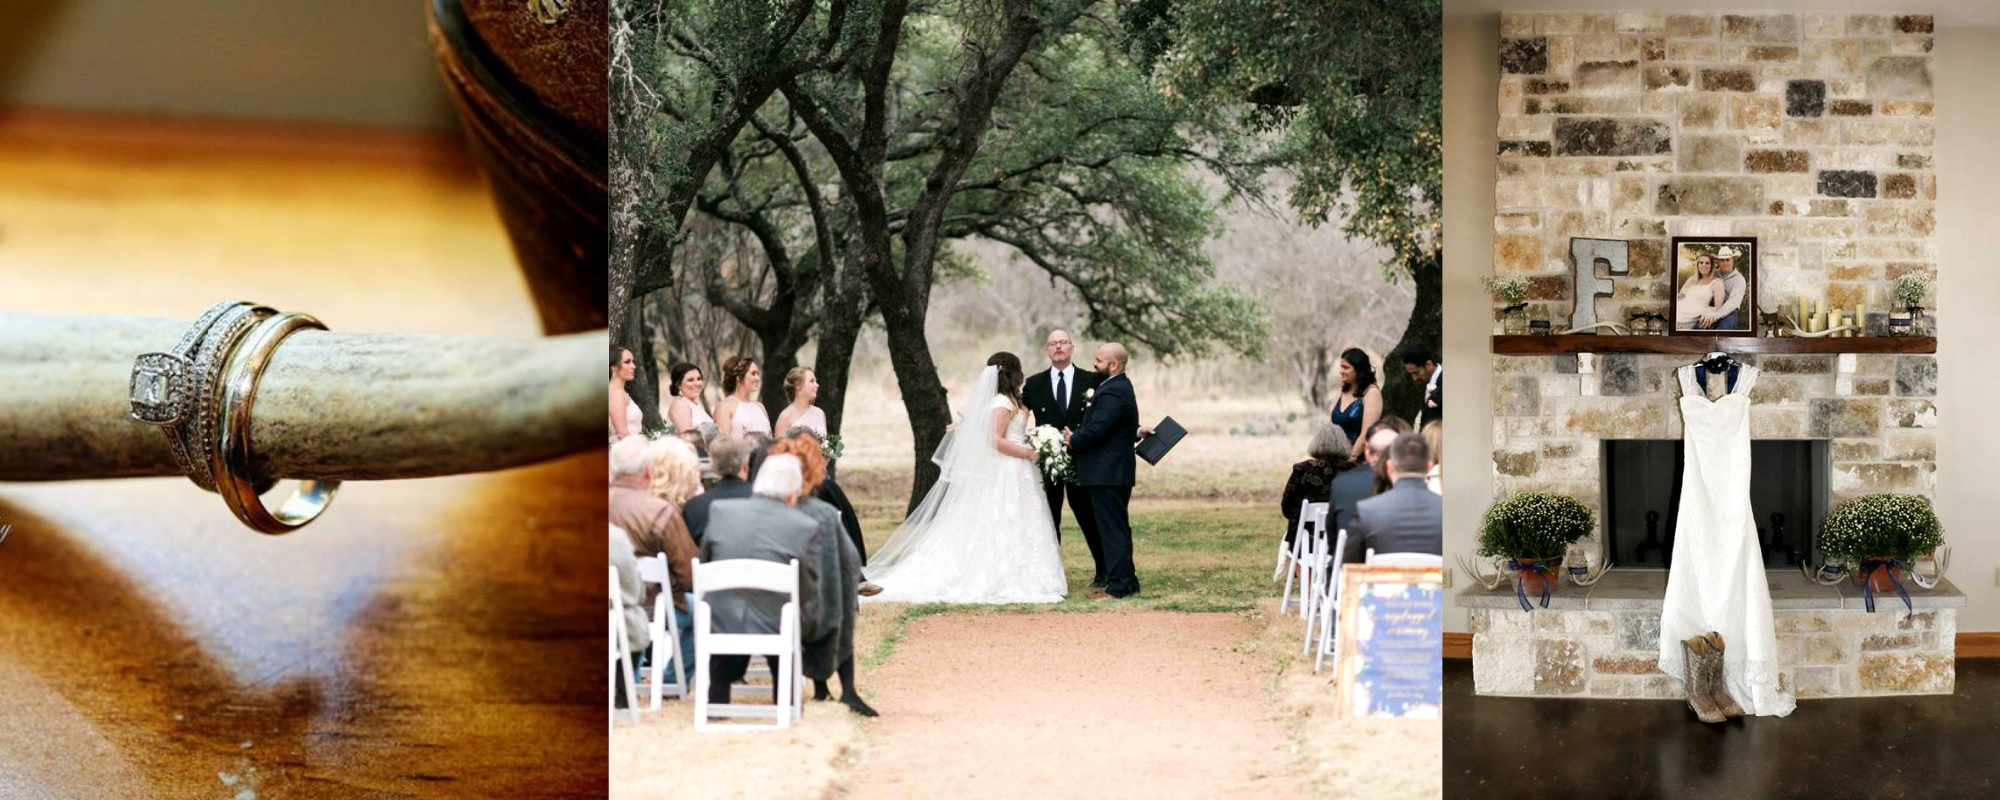 Weddings at The Moss Ranch at Enchanted Rock